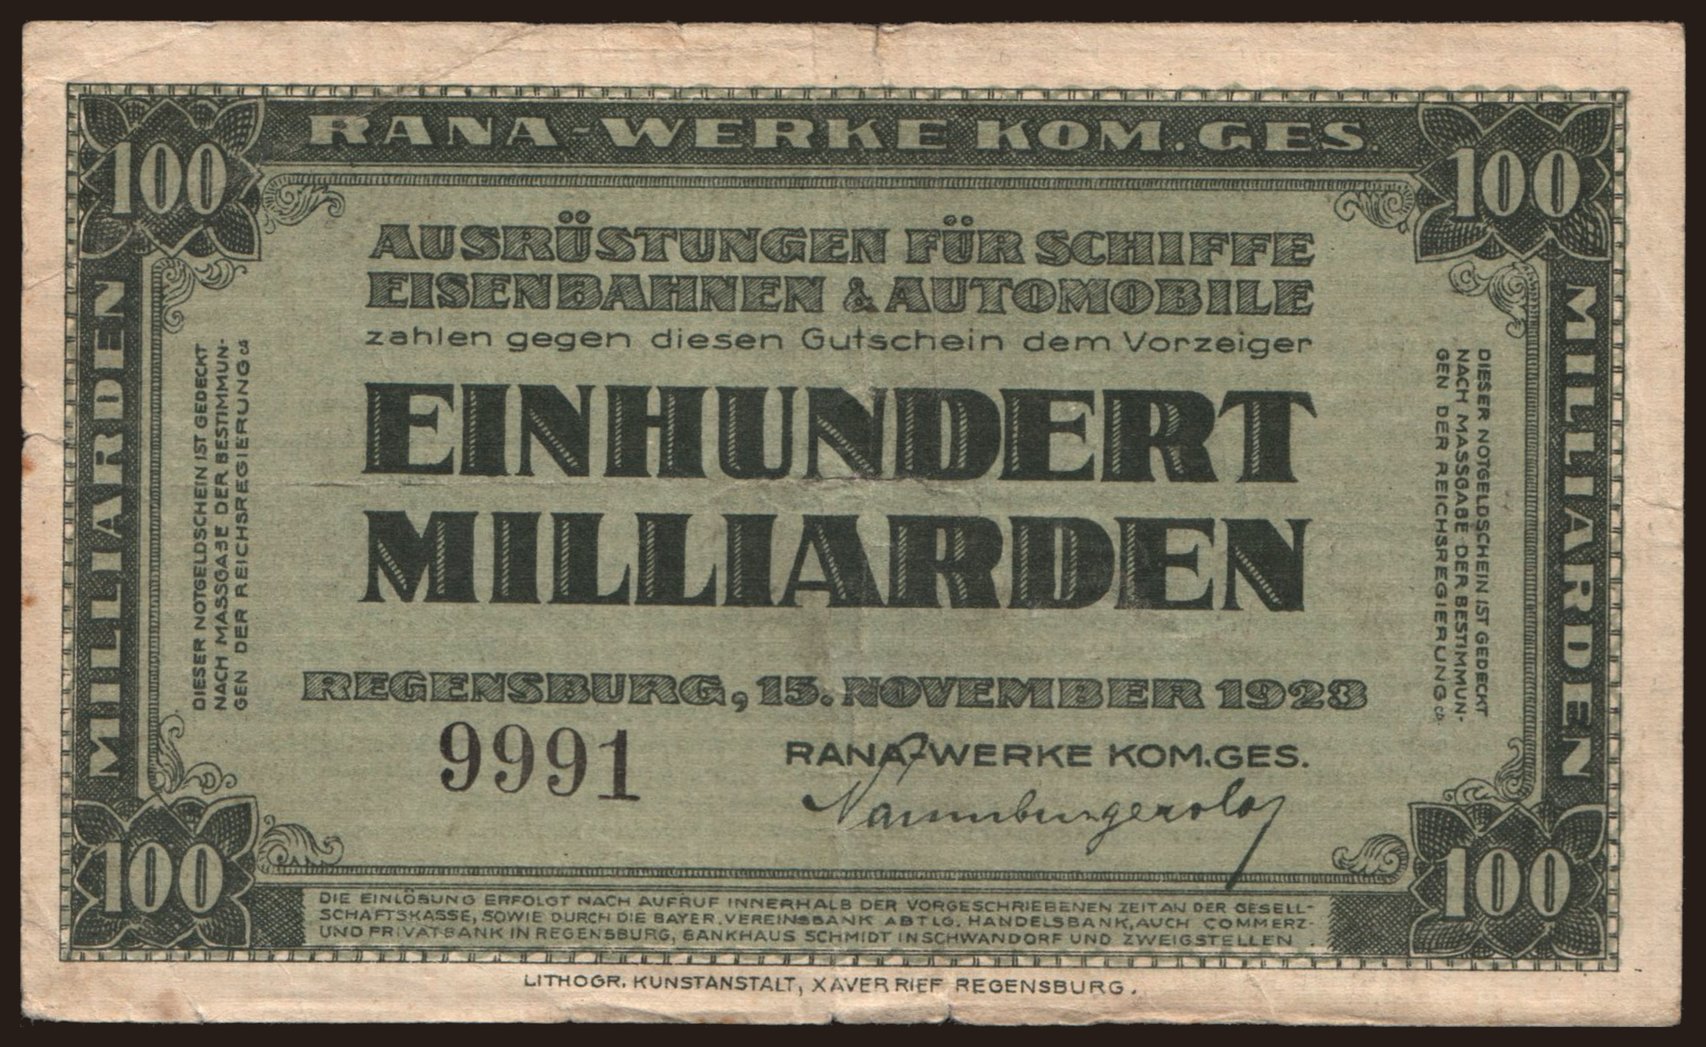 Regensburg/ RANA - Werke Kom. Ges., 100.000.000.000 Mark, 1923